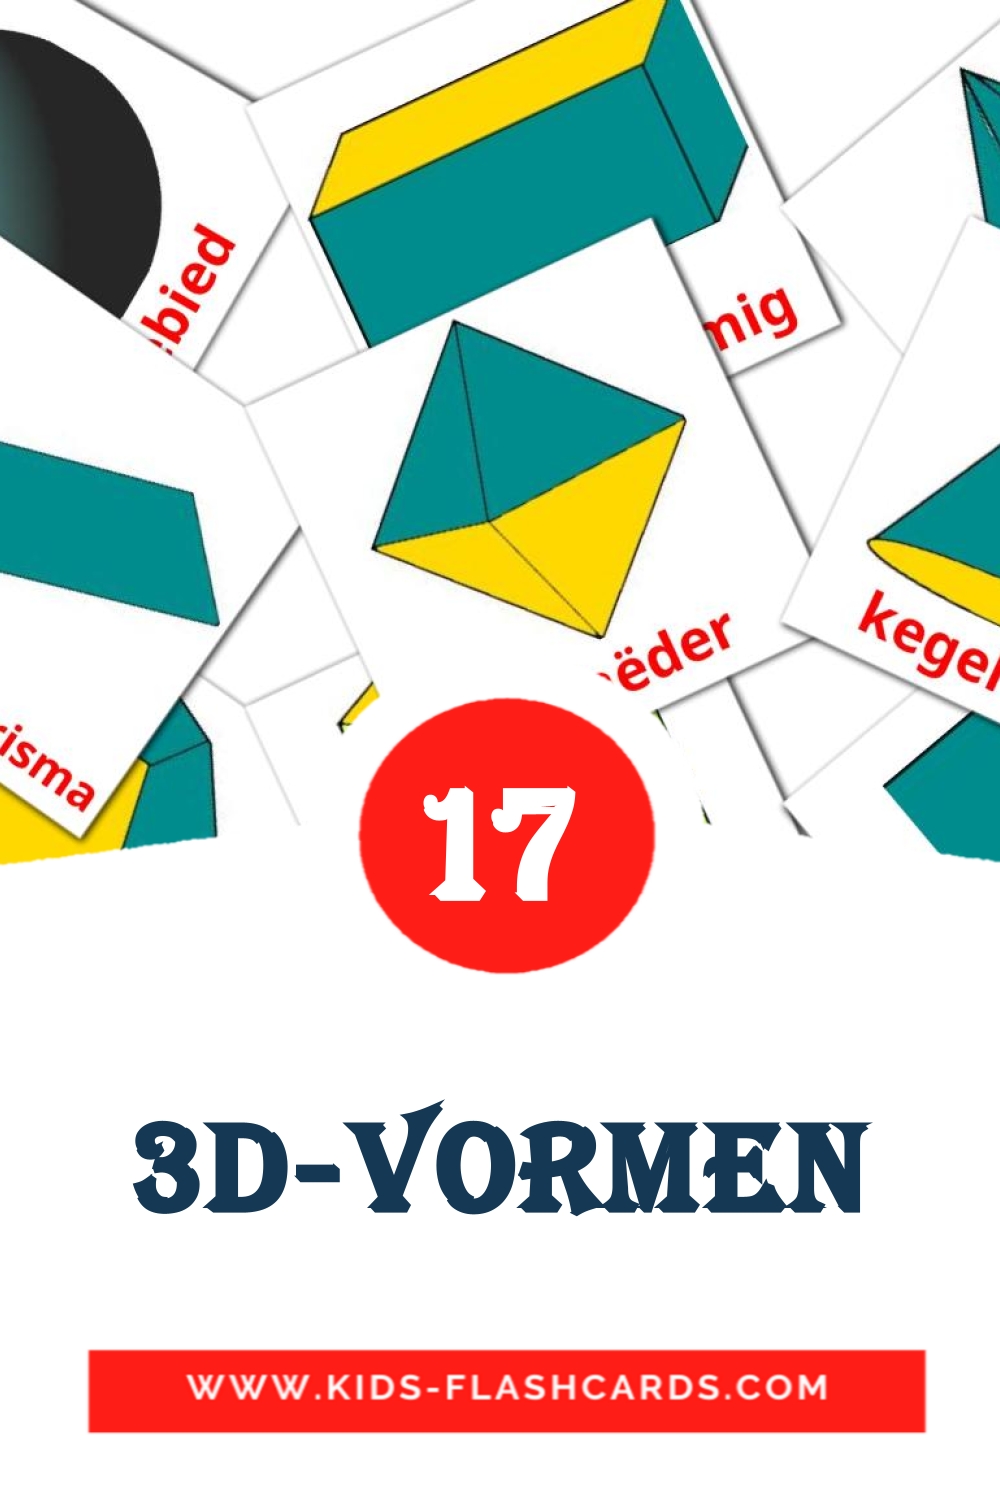 17 3D-vormen fotokaarten voor kleuters in het nederlands